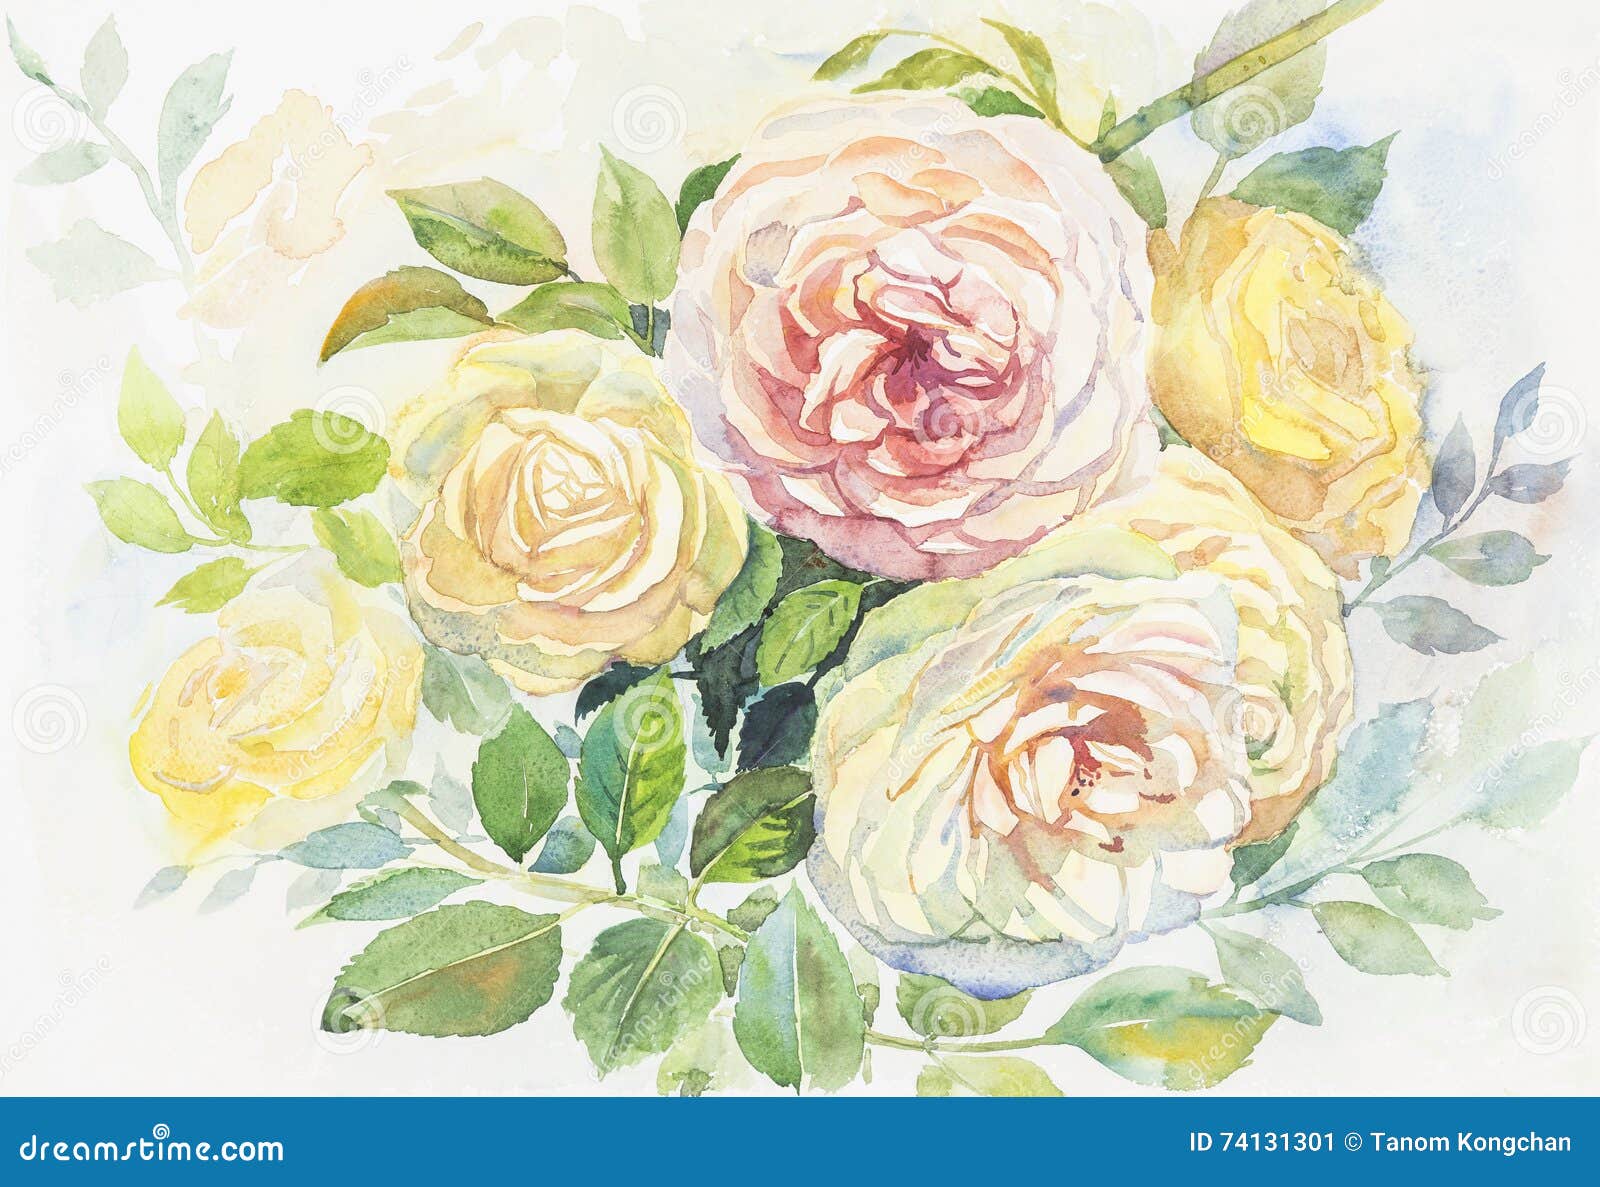 Akwarela oryginalny obraz realistyczny róża kwiaty. Akwarela oryginalnego obrazu Realistyczny kolor żółty, różowy kolor róża kwiaty i zieleń, opuszczamy w abstrakcjonistycznym tle